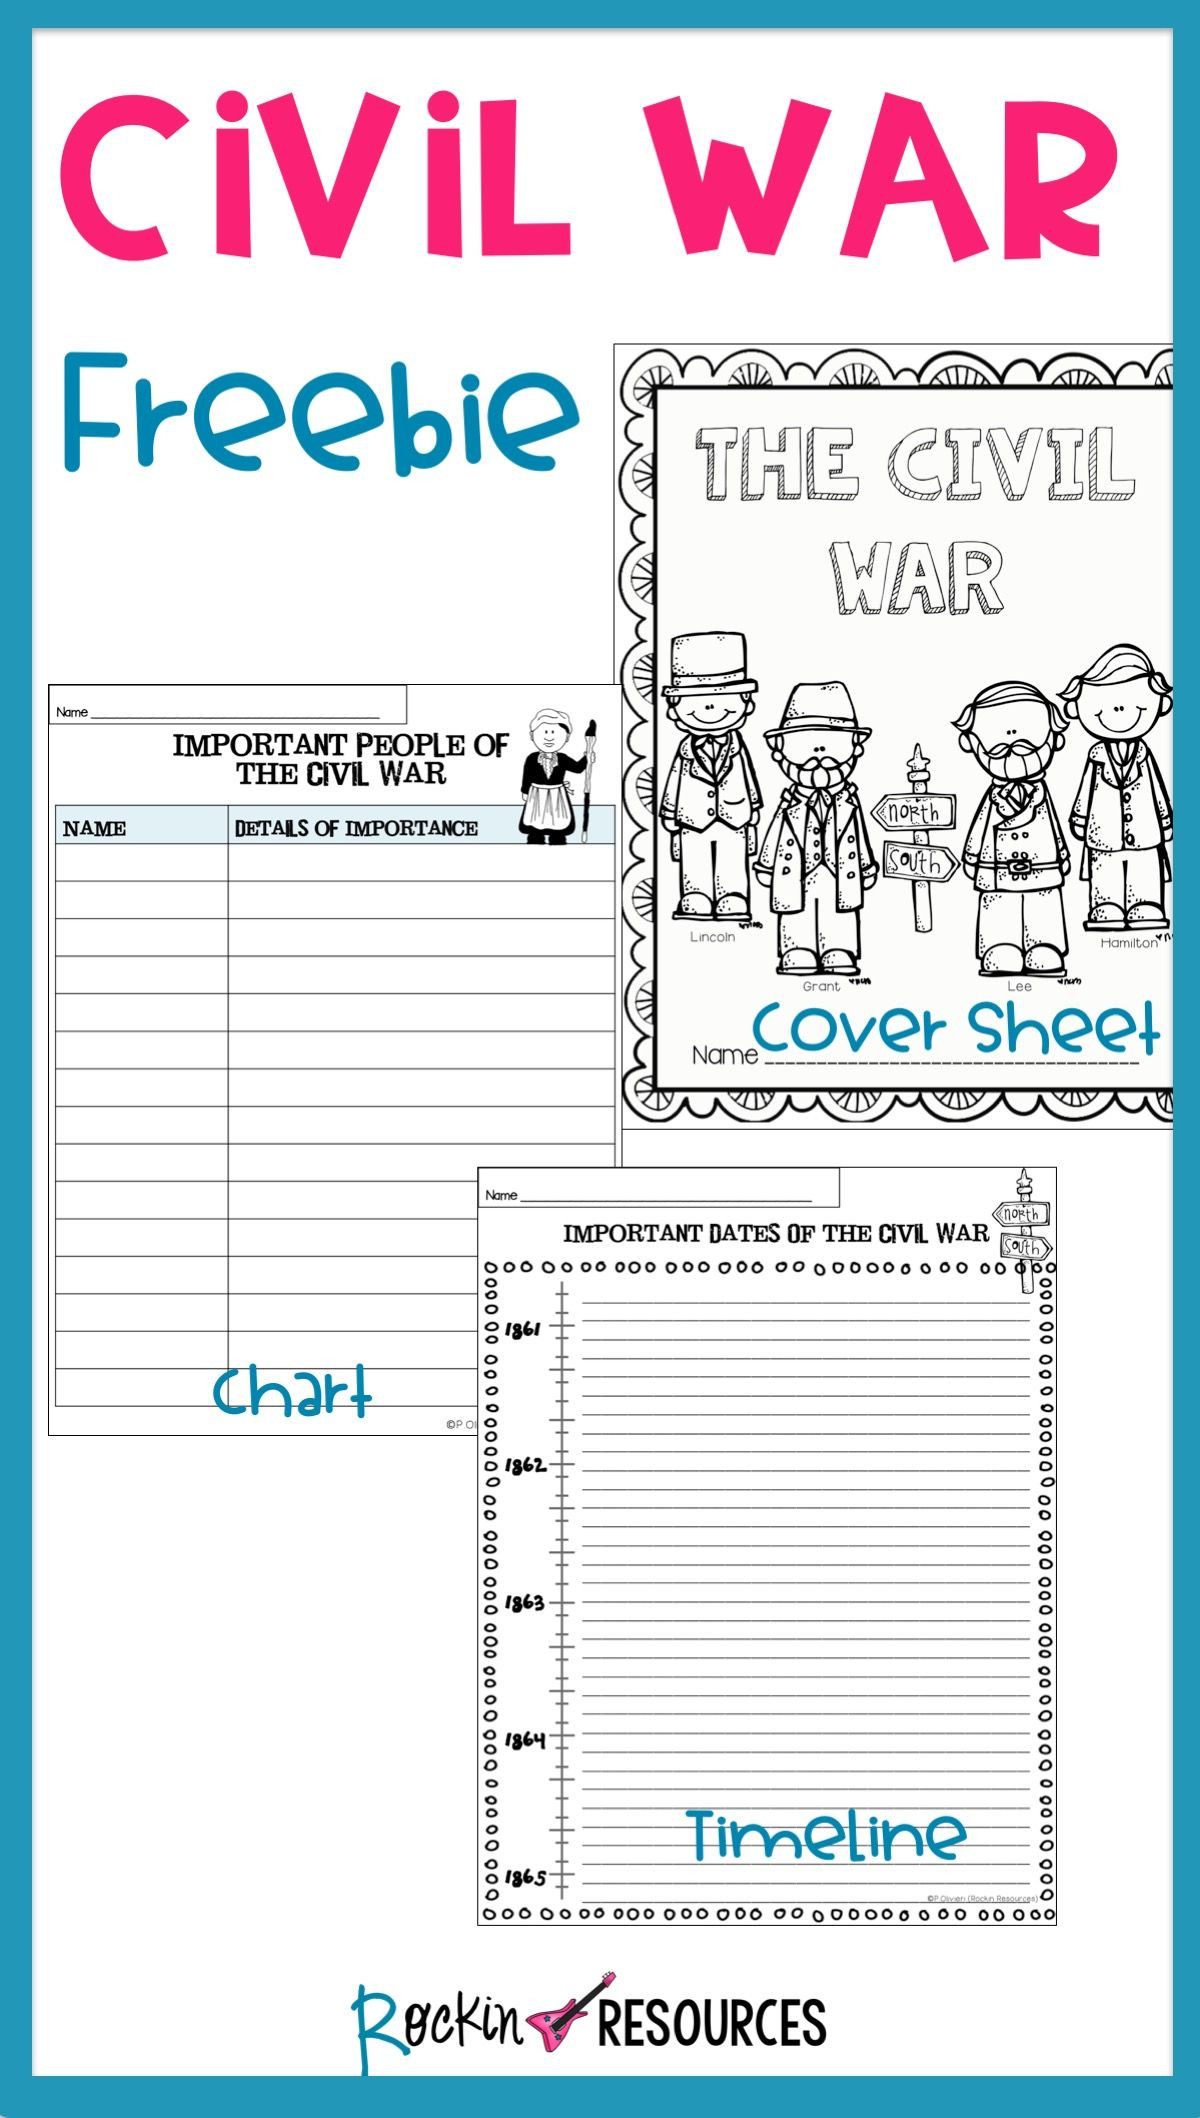 Civil War Timeline Worksheet Civil War Timeline Cover Page and Chart Free